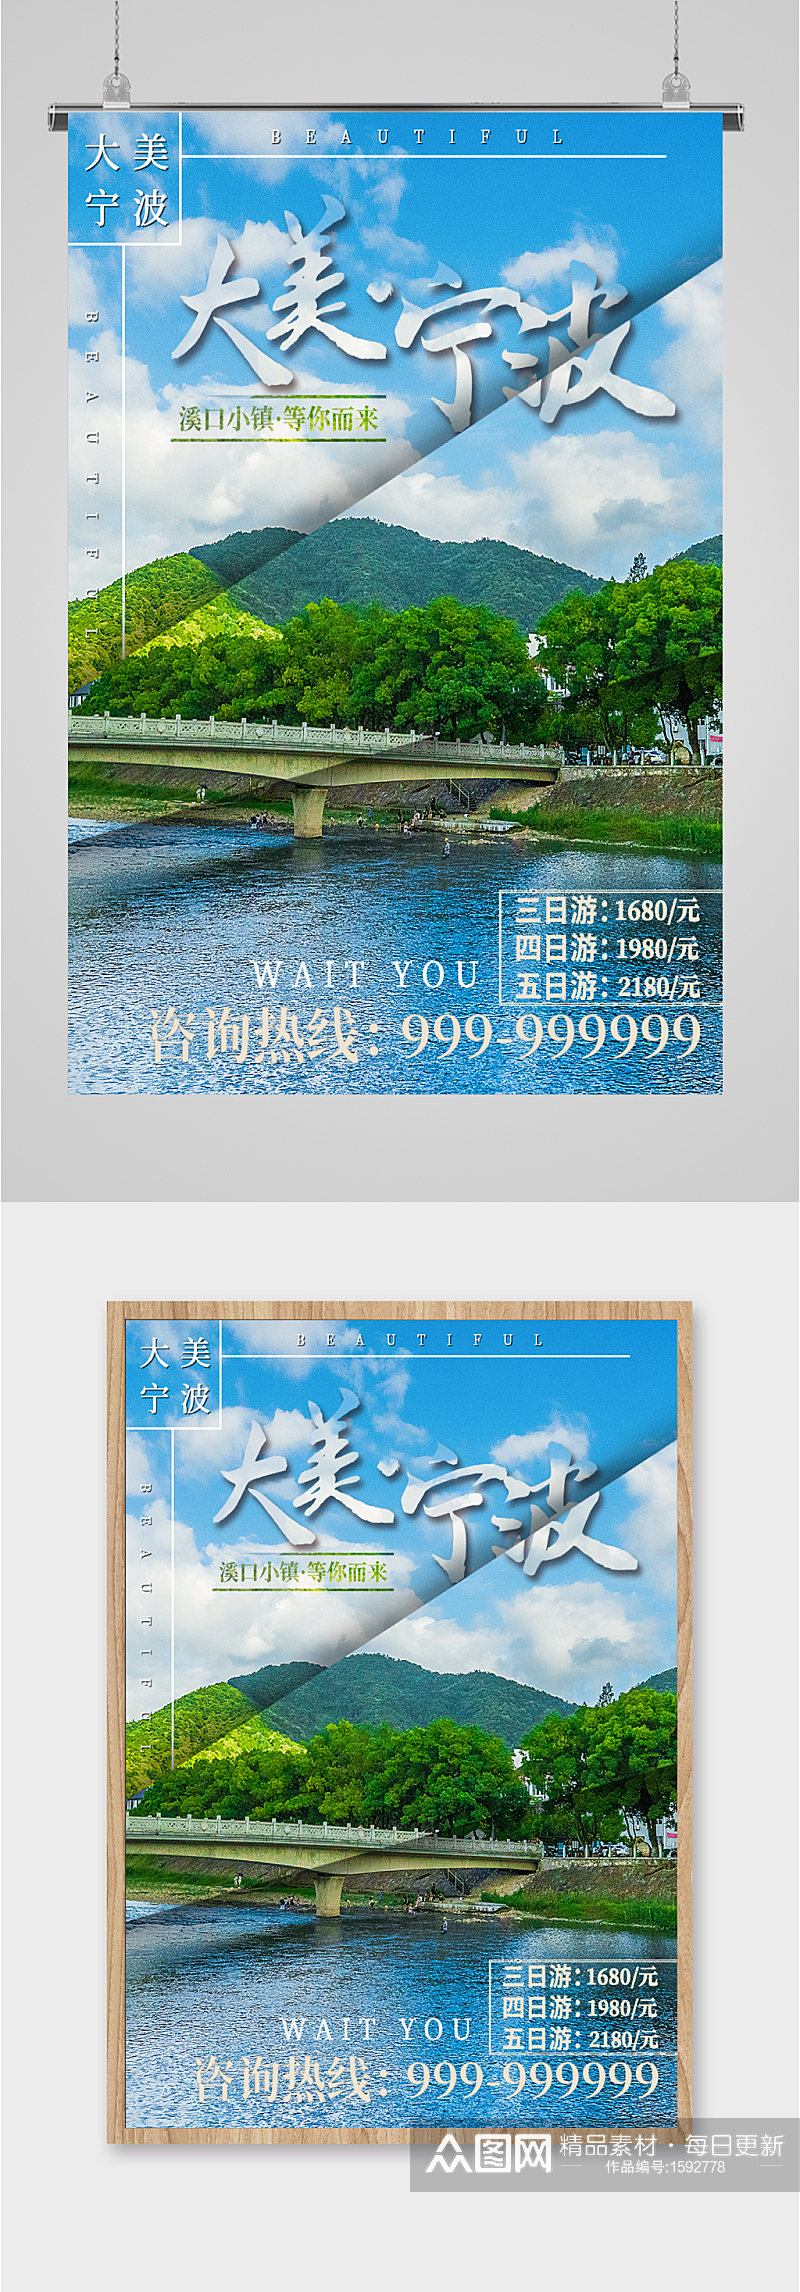 宁波溪口小镇旅游海报素材